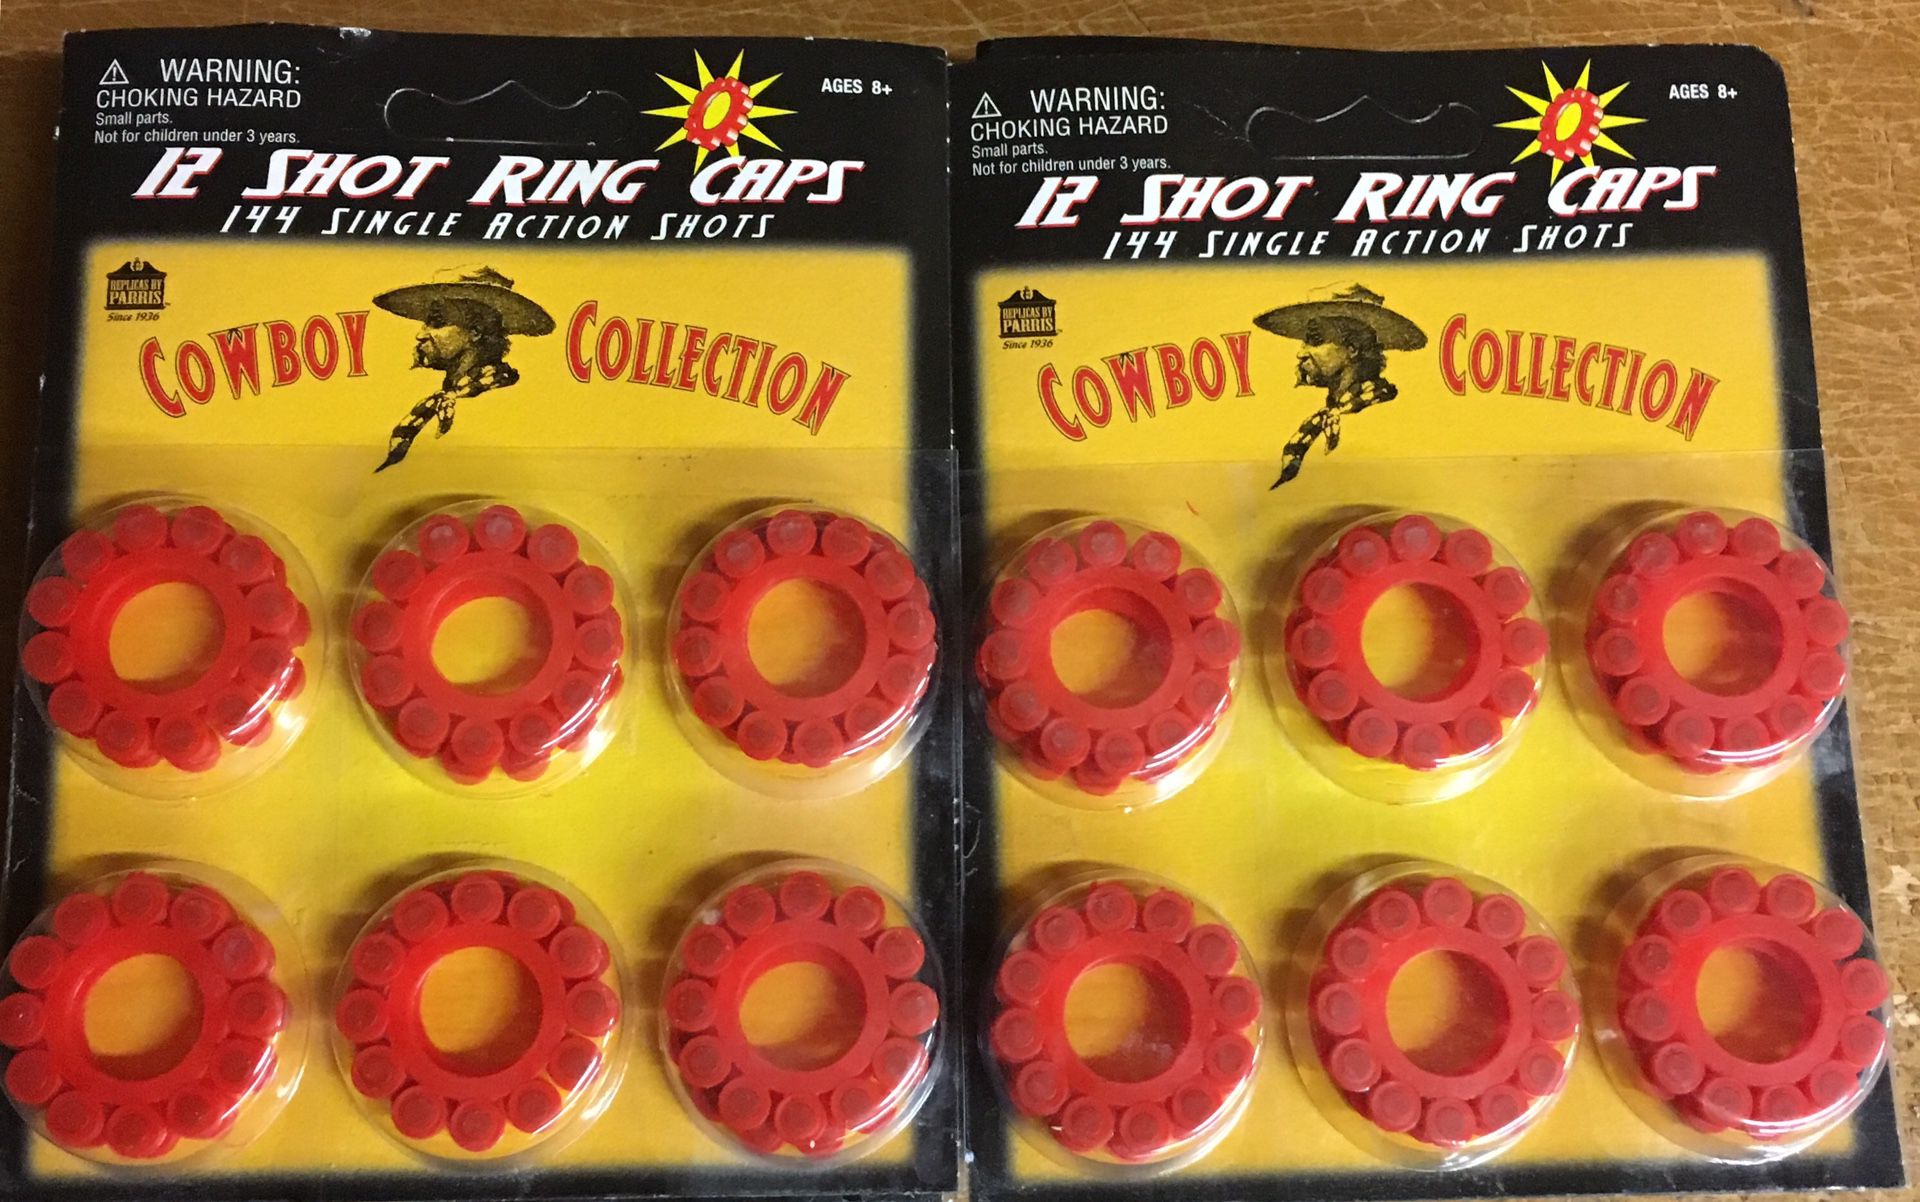 12 Shot Ring Caps 10 Pack Lot (1440 Total Caps)